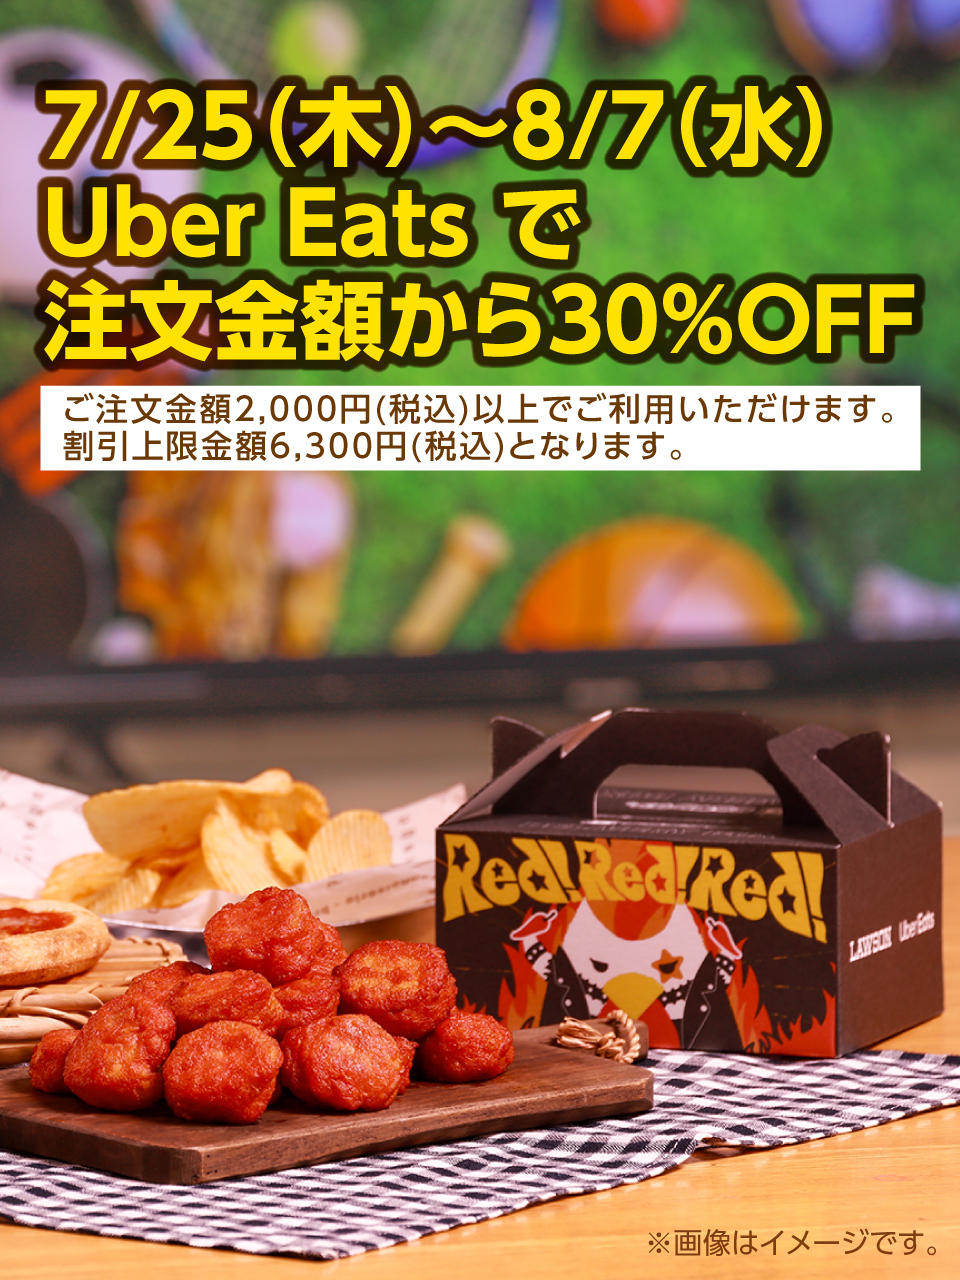 7/25(木)～8/7(水) Uber Eatsで注文金額から30%OFF